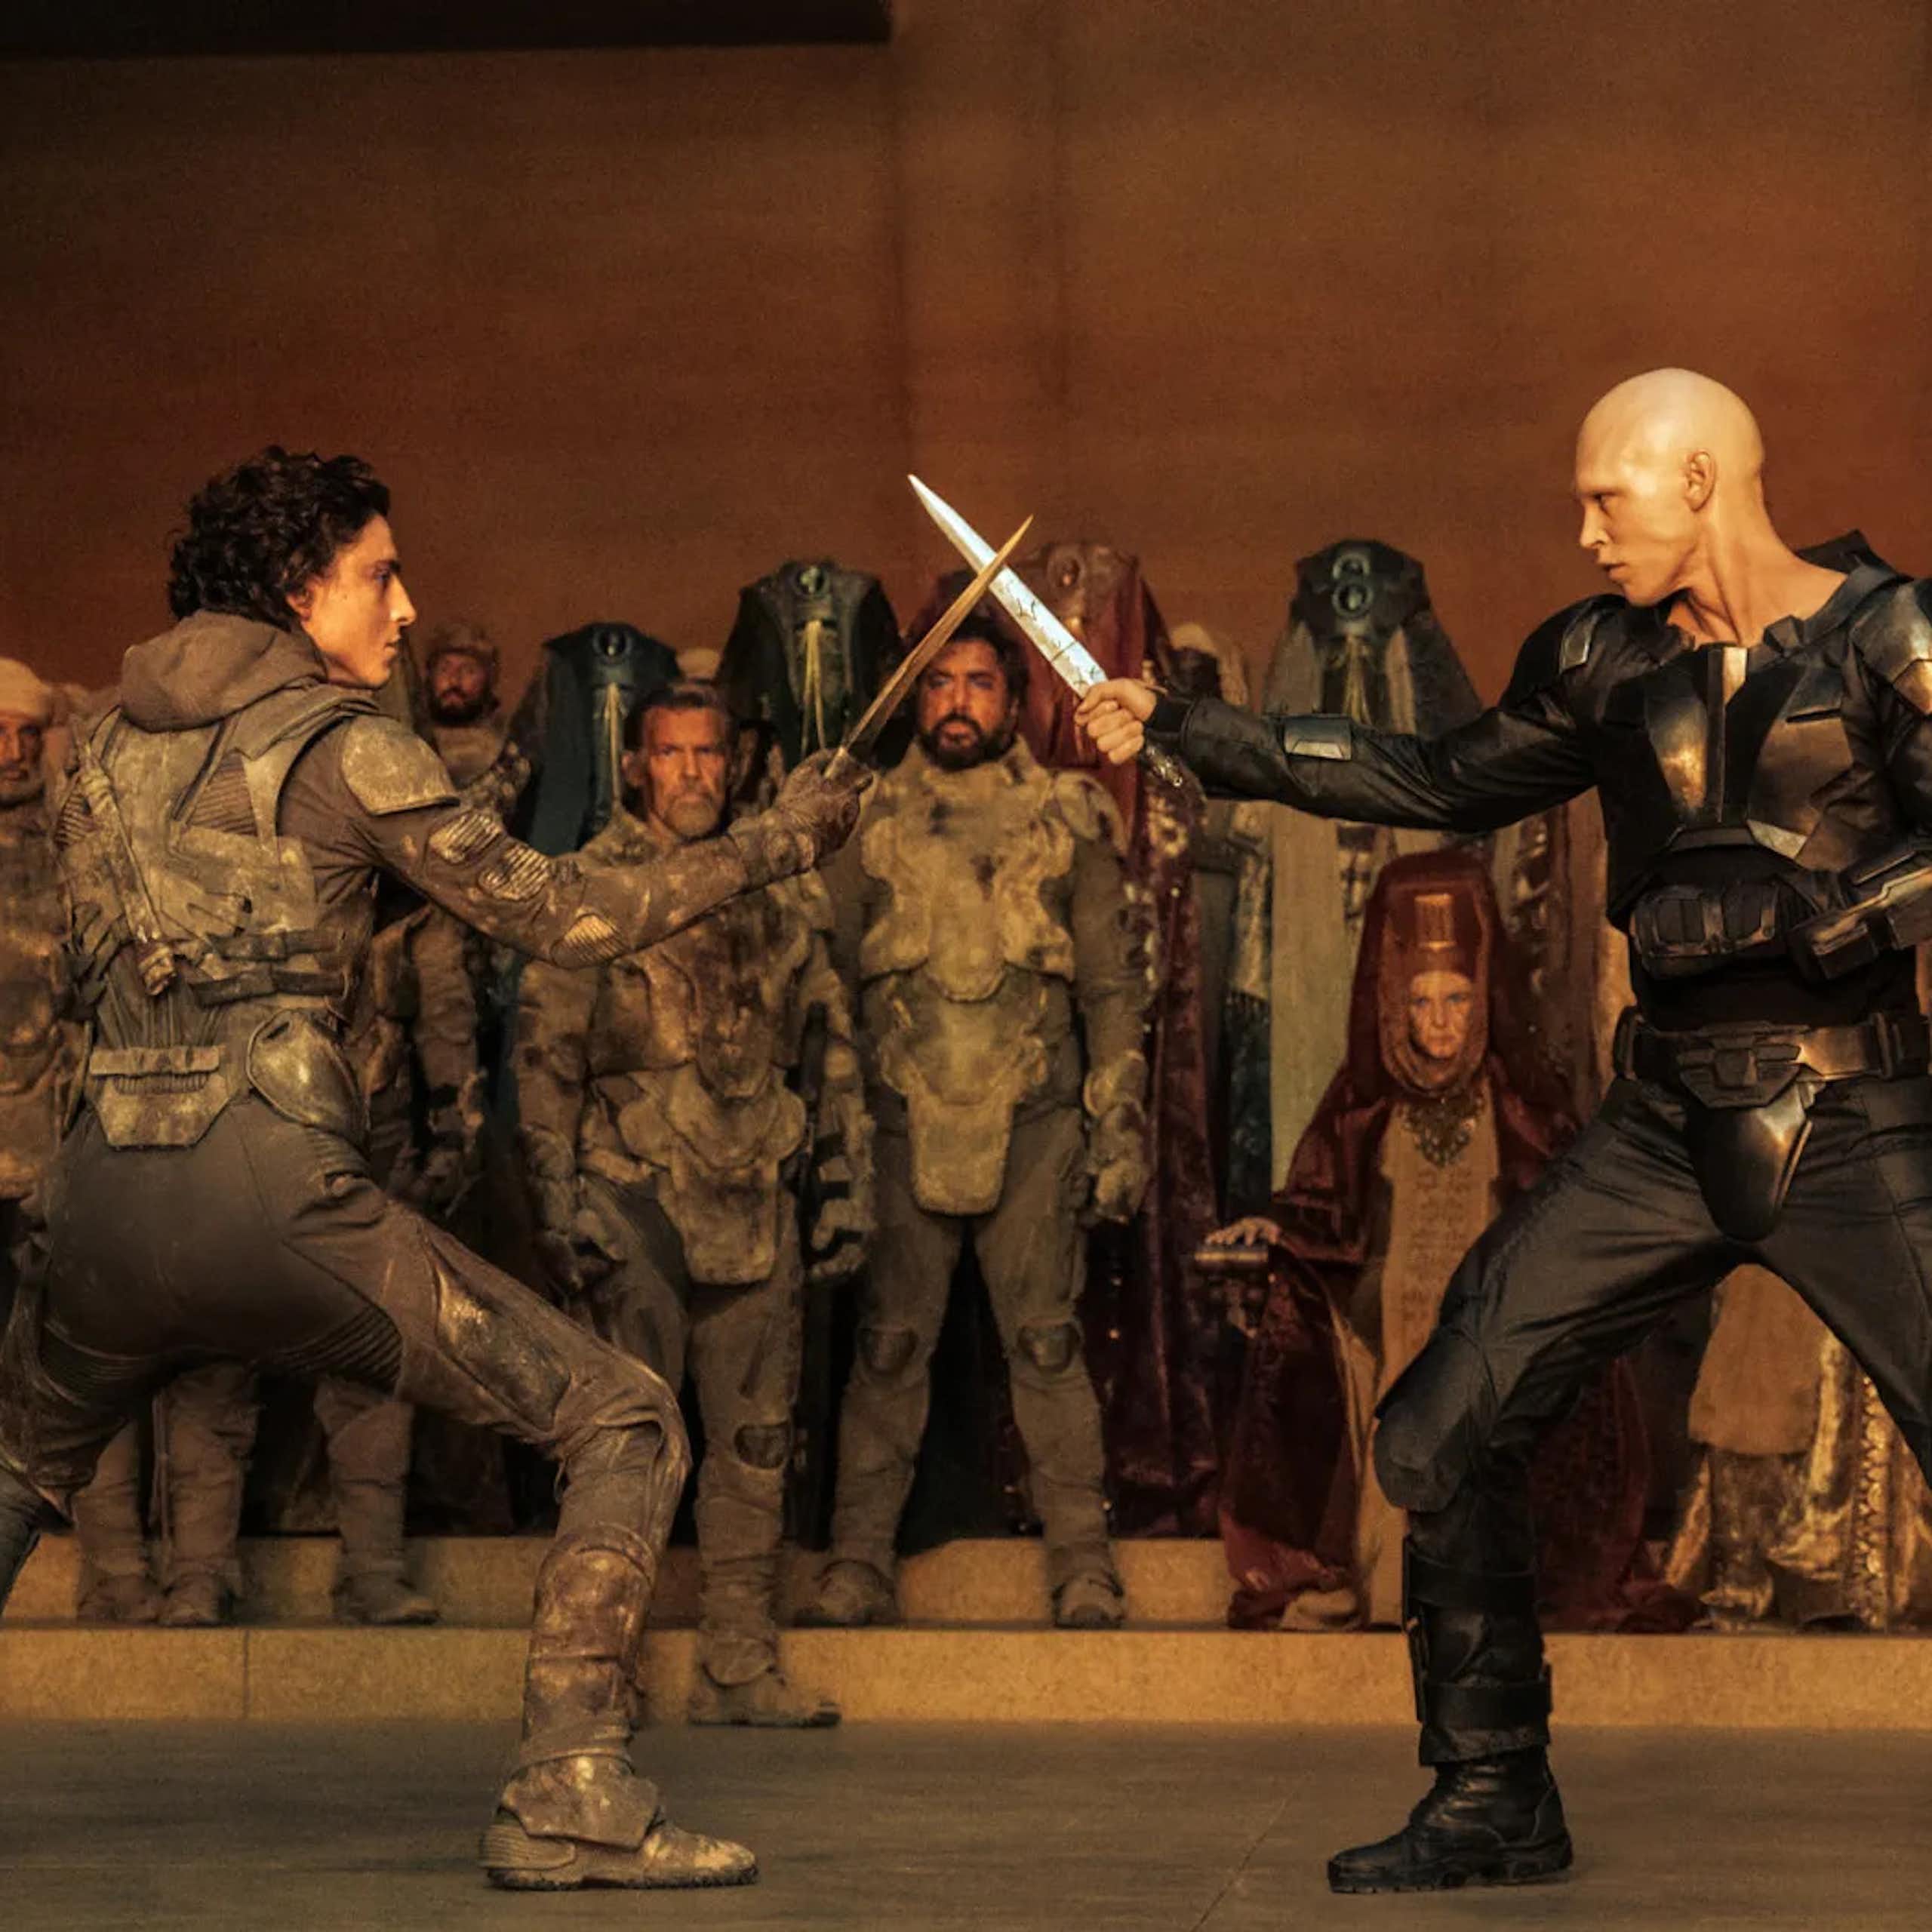 Scène de combat entre Paul Atréides et Feyd-Rautha Harkonnen dans Dune, deuxième partie. Les deux personnages croisent leurs dagues.